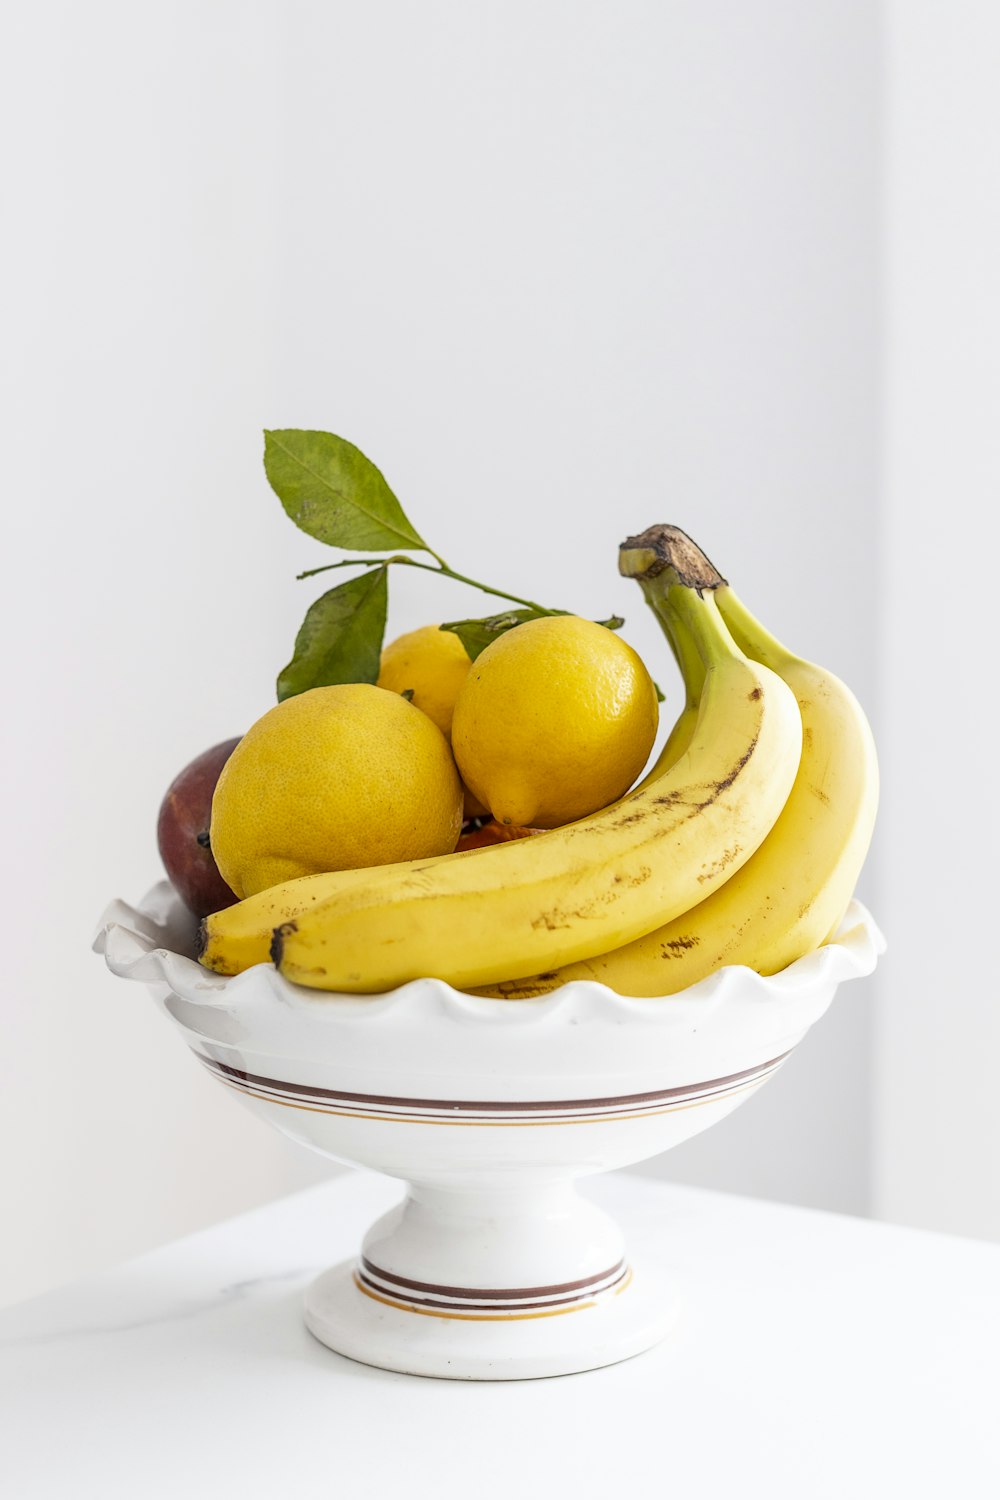 흰색 세라믹 그릇에 노란색 바나나 과일